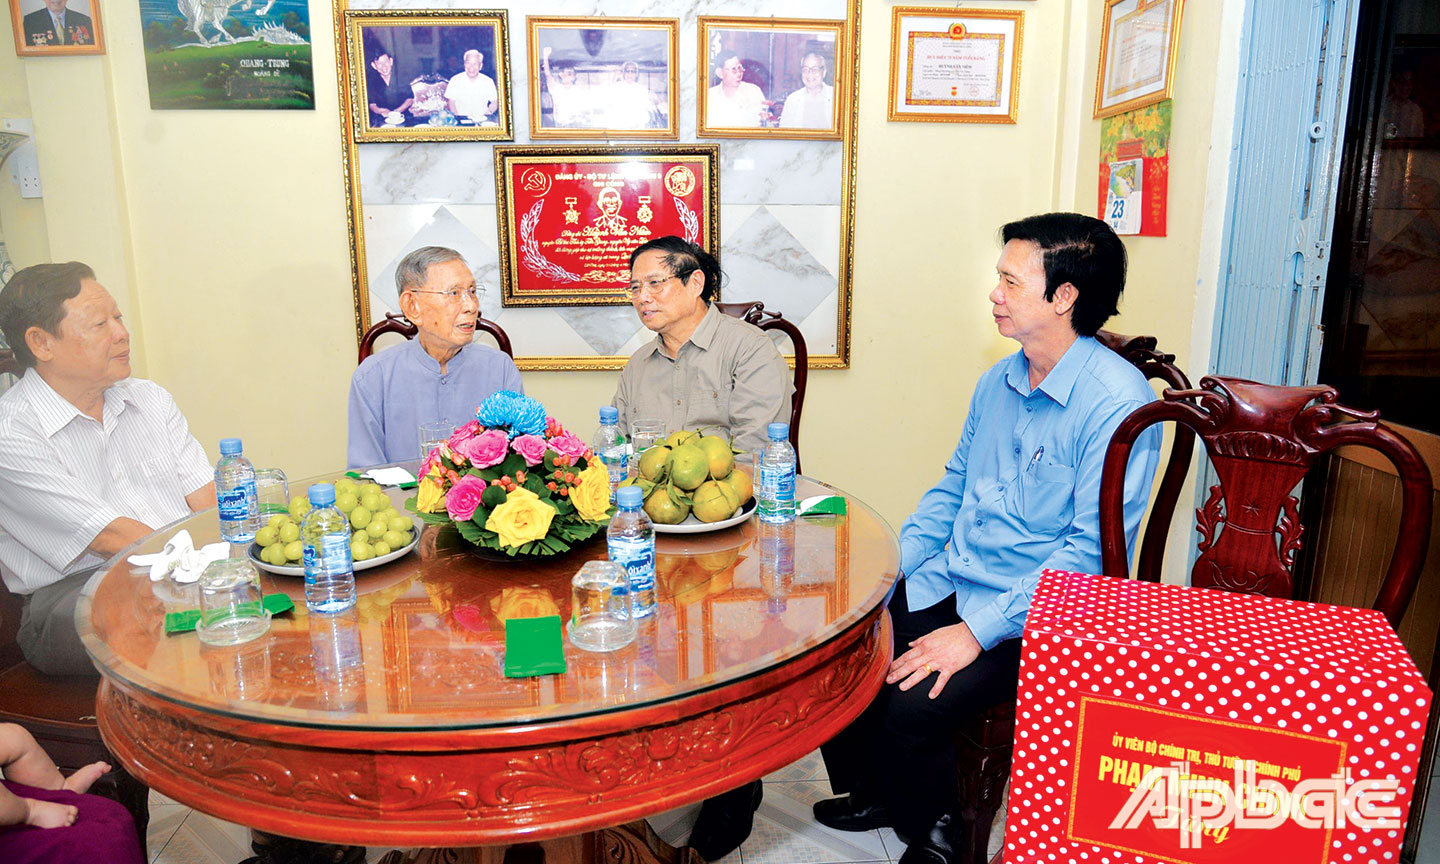 Thủ tướng Phạm Minh Chính thăm, tặng quà đồng chí Huỳnh Văn Niềm, nguyên Ủy viên Ban  Chấp hành Trung ương Đảng, nguyên Bí thư Tỉnh ủy Tiền Giang, nguyên Phó Trưởng Ban Tổ chức Trung ương.